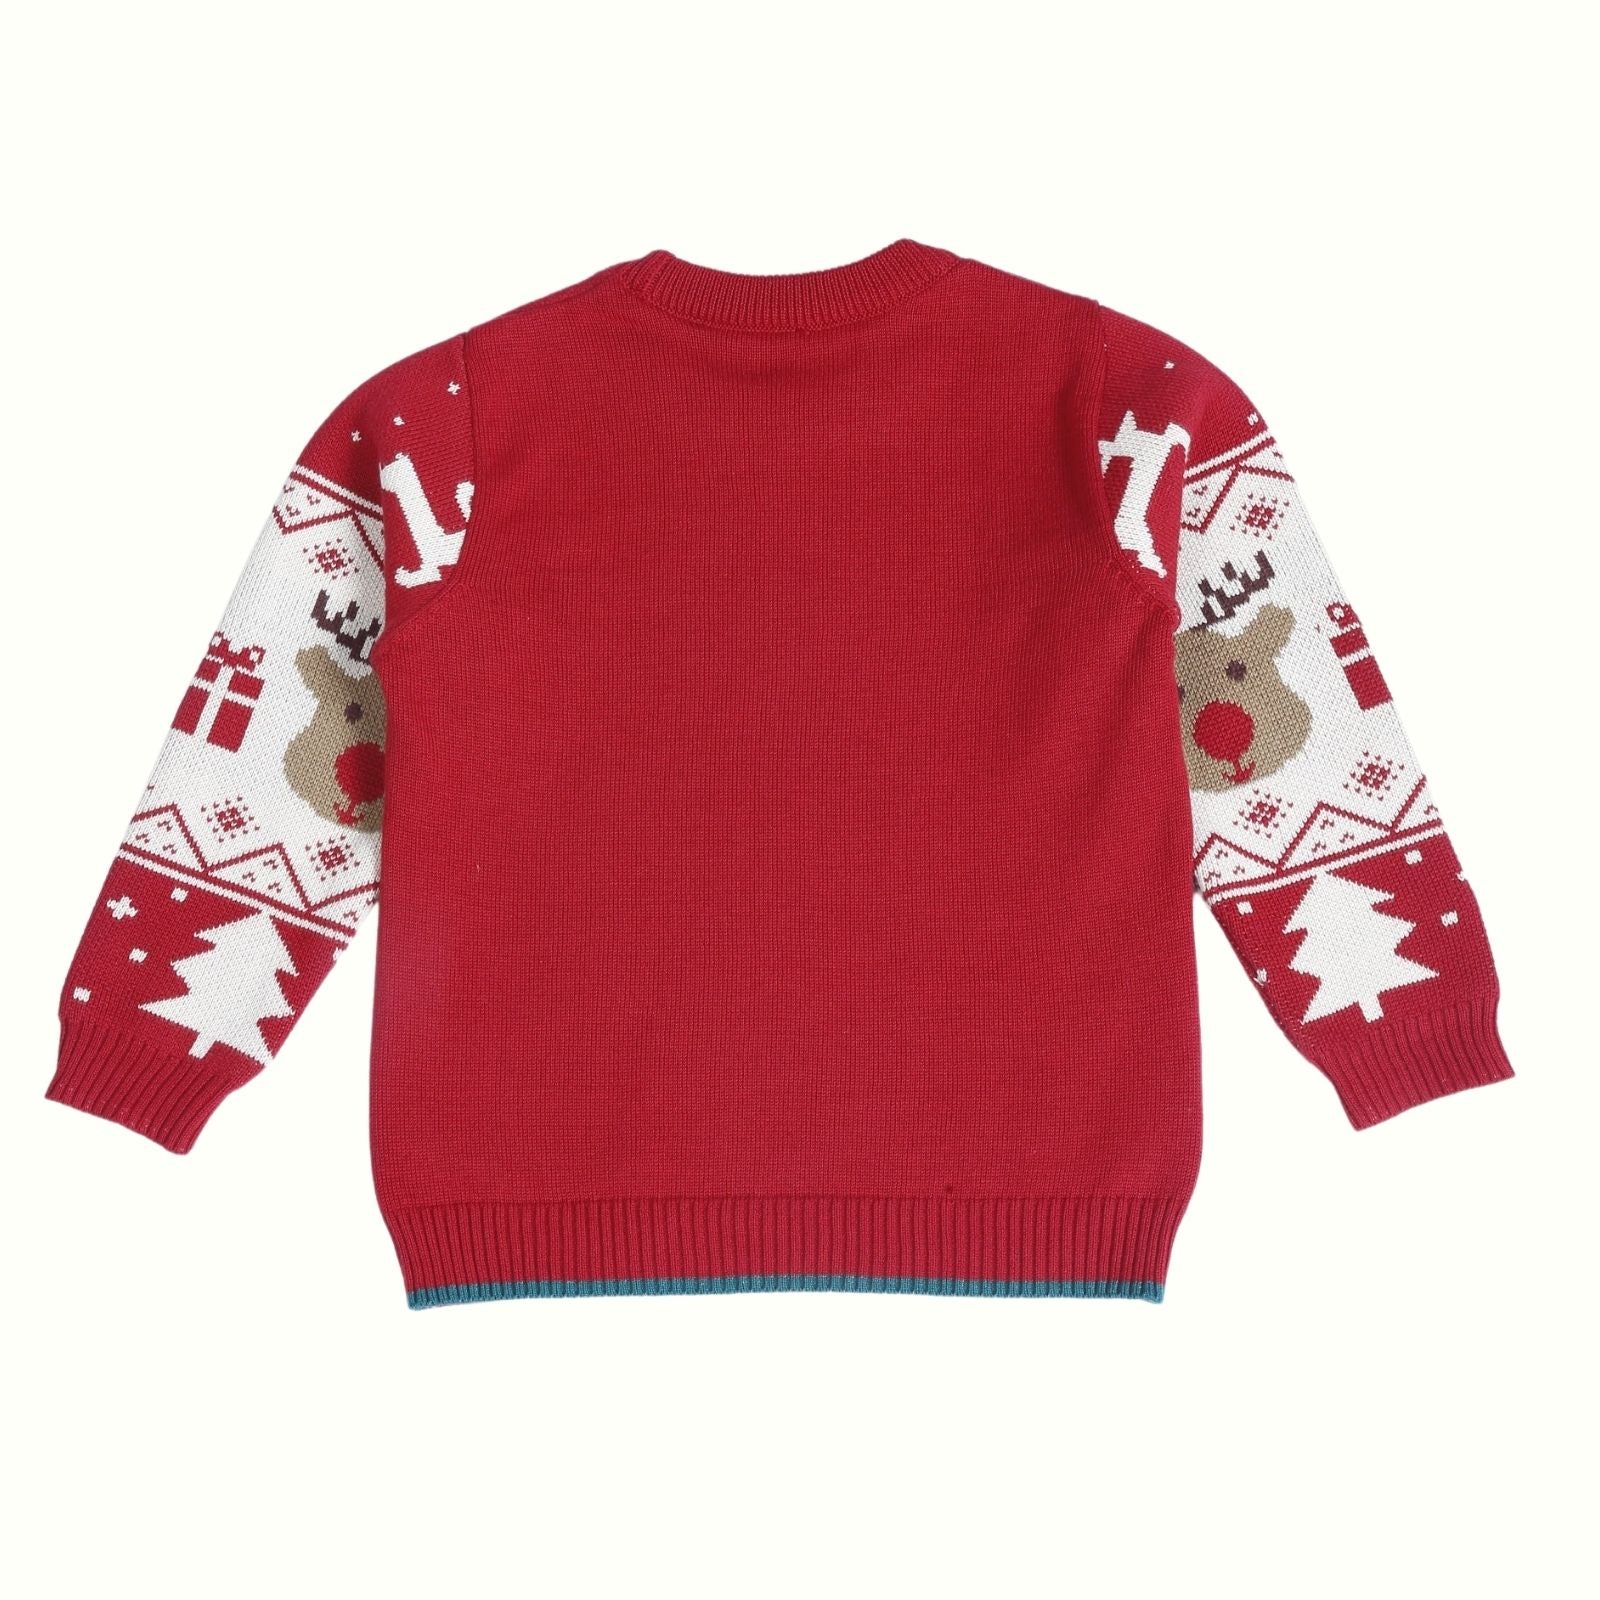 Greendeer Jaunty Reindeer & Joyful Reindeer 100% Cotton Sweater Set of 2